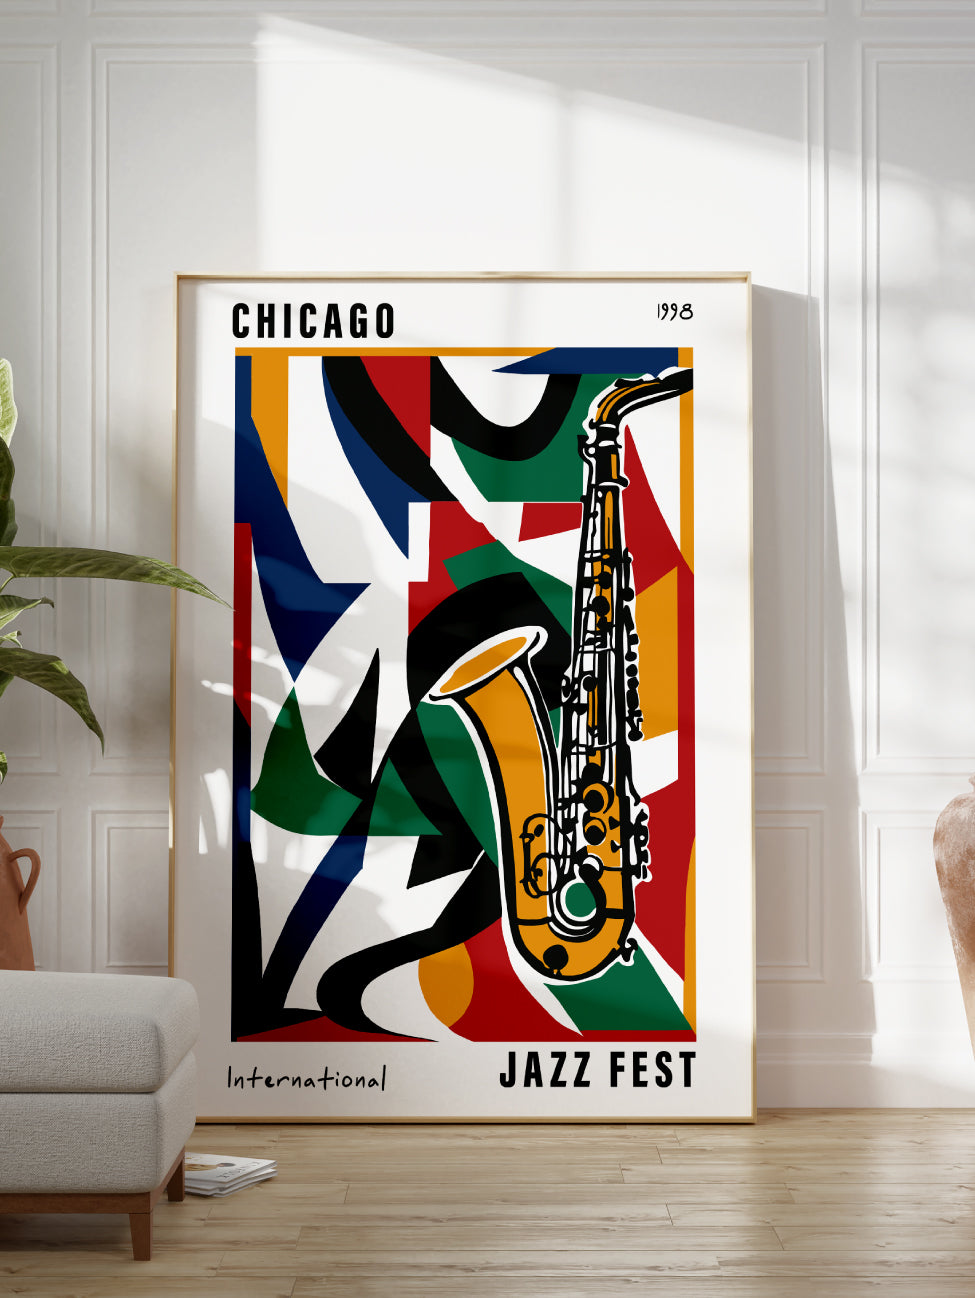 Chicago Jazz Festival 1998 Poster